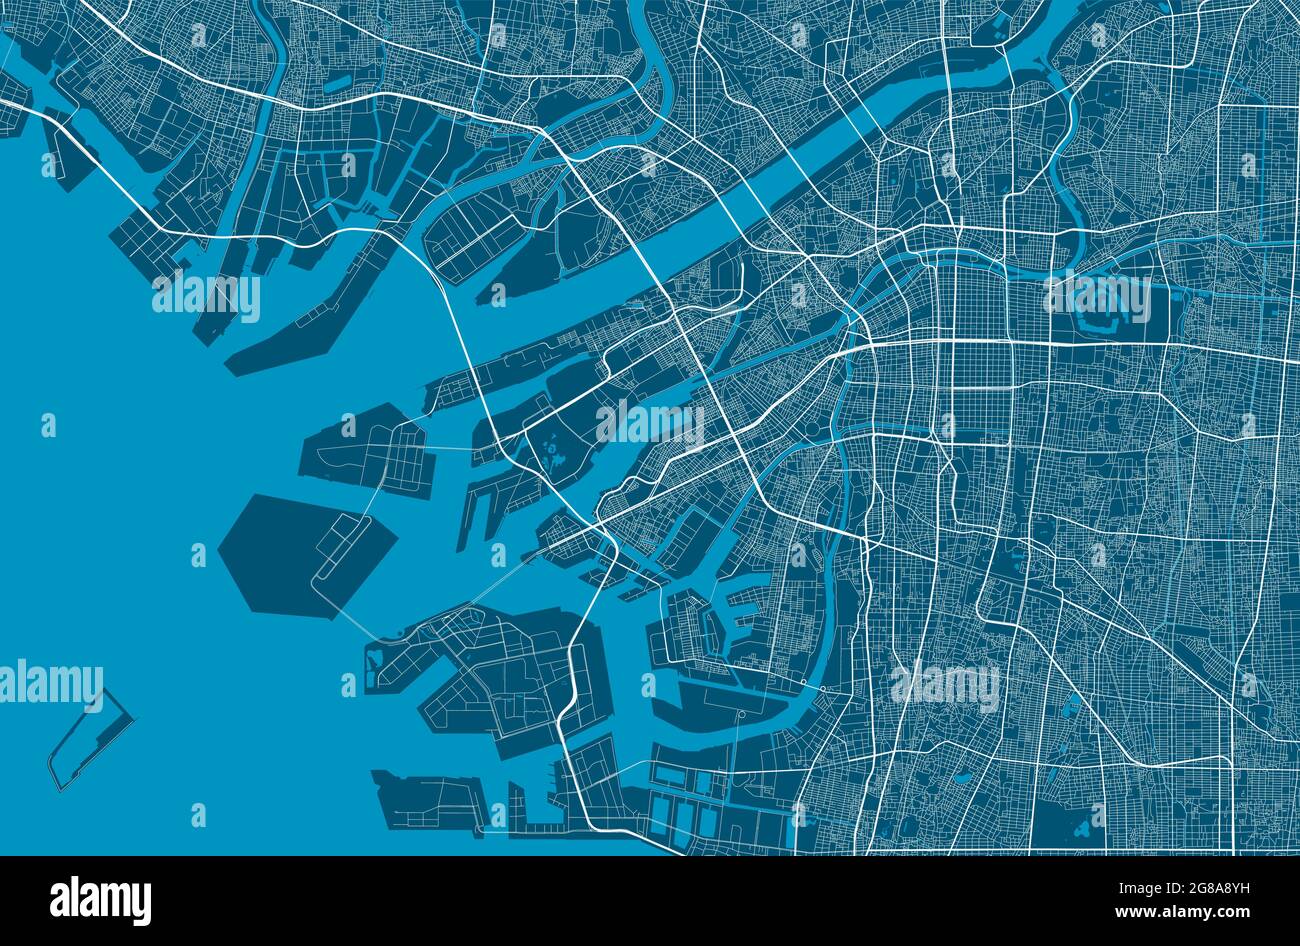 Detaillierte Karte des Verwaltungsgebiets der Stadt Osaka. Lizenzfreie Vektorgrafik, Landpanorama. Dekorative Grafik Touristenkarte von Osaka Gebiet. Stock Vektor